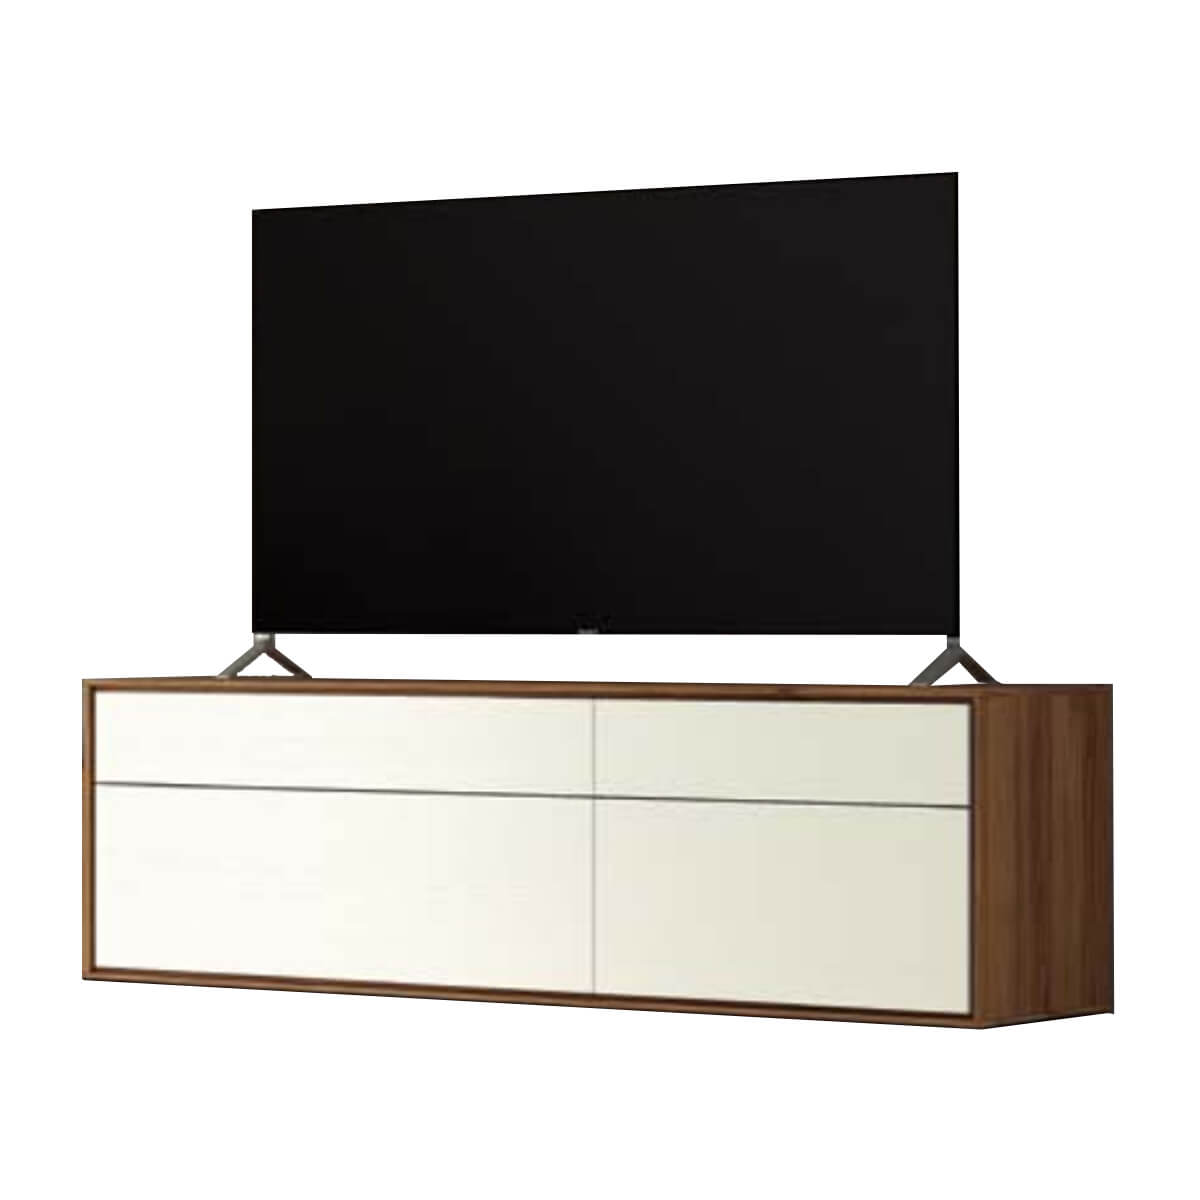 Mueble tv chapa madera natural y blanco - Comprar muebles tv - Artikalia